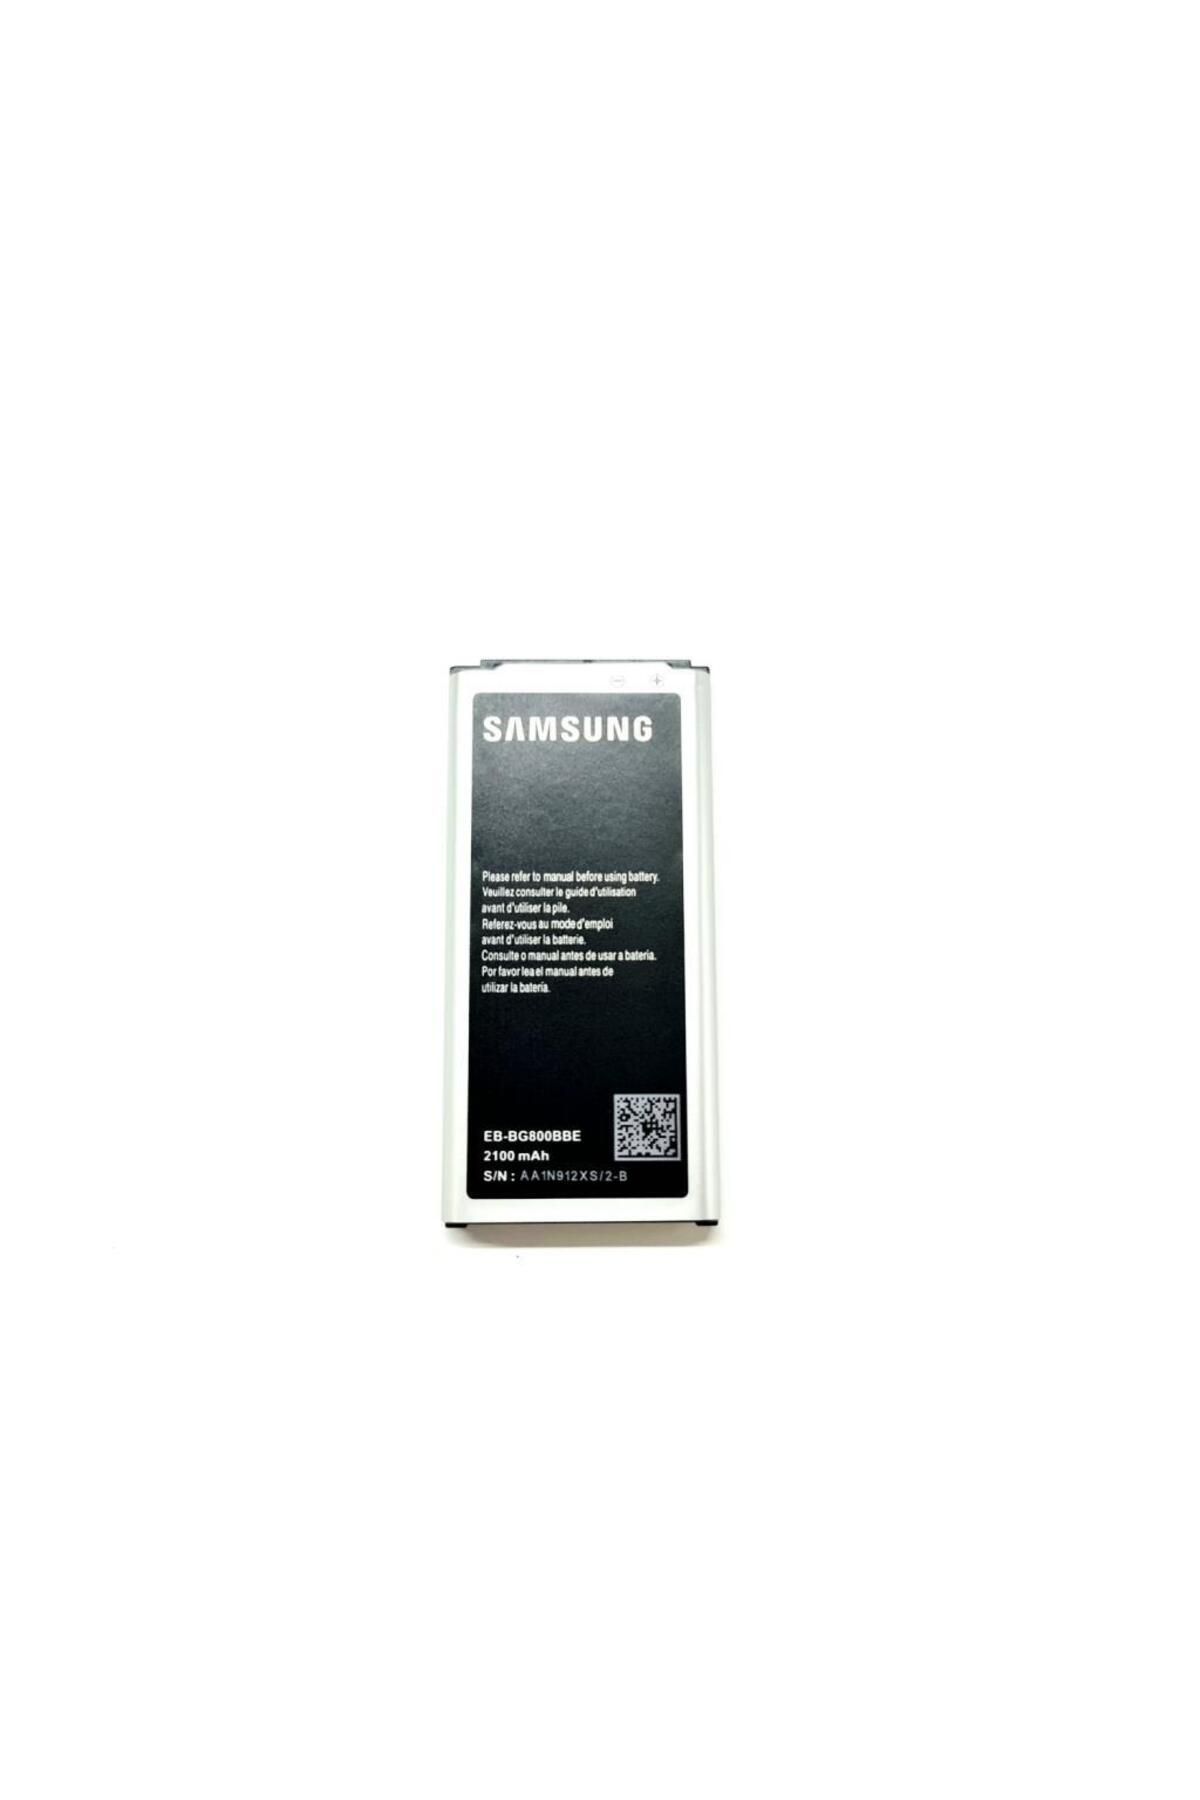 tkgz Samsung Galaxy S5 Mini Sm-g800f Batarya Pil